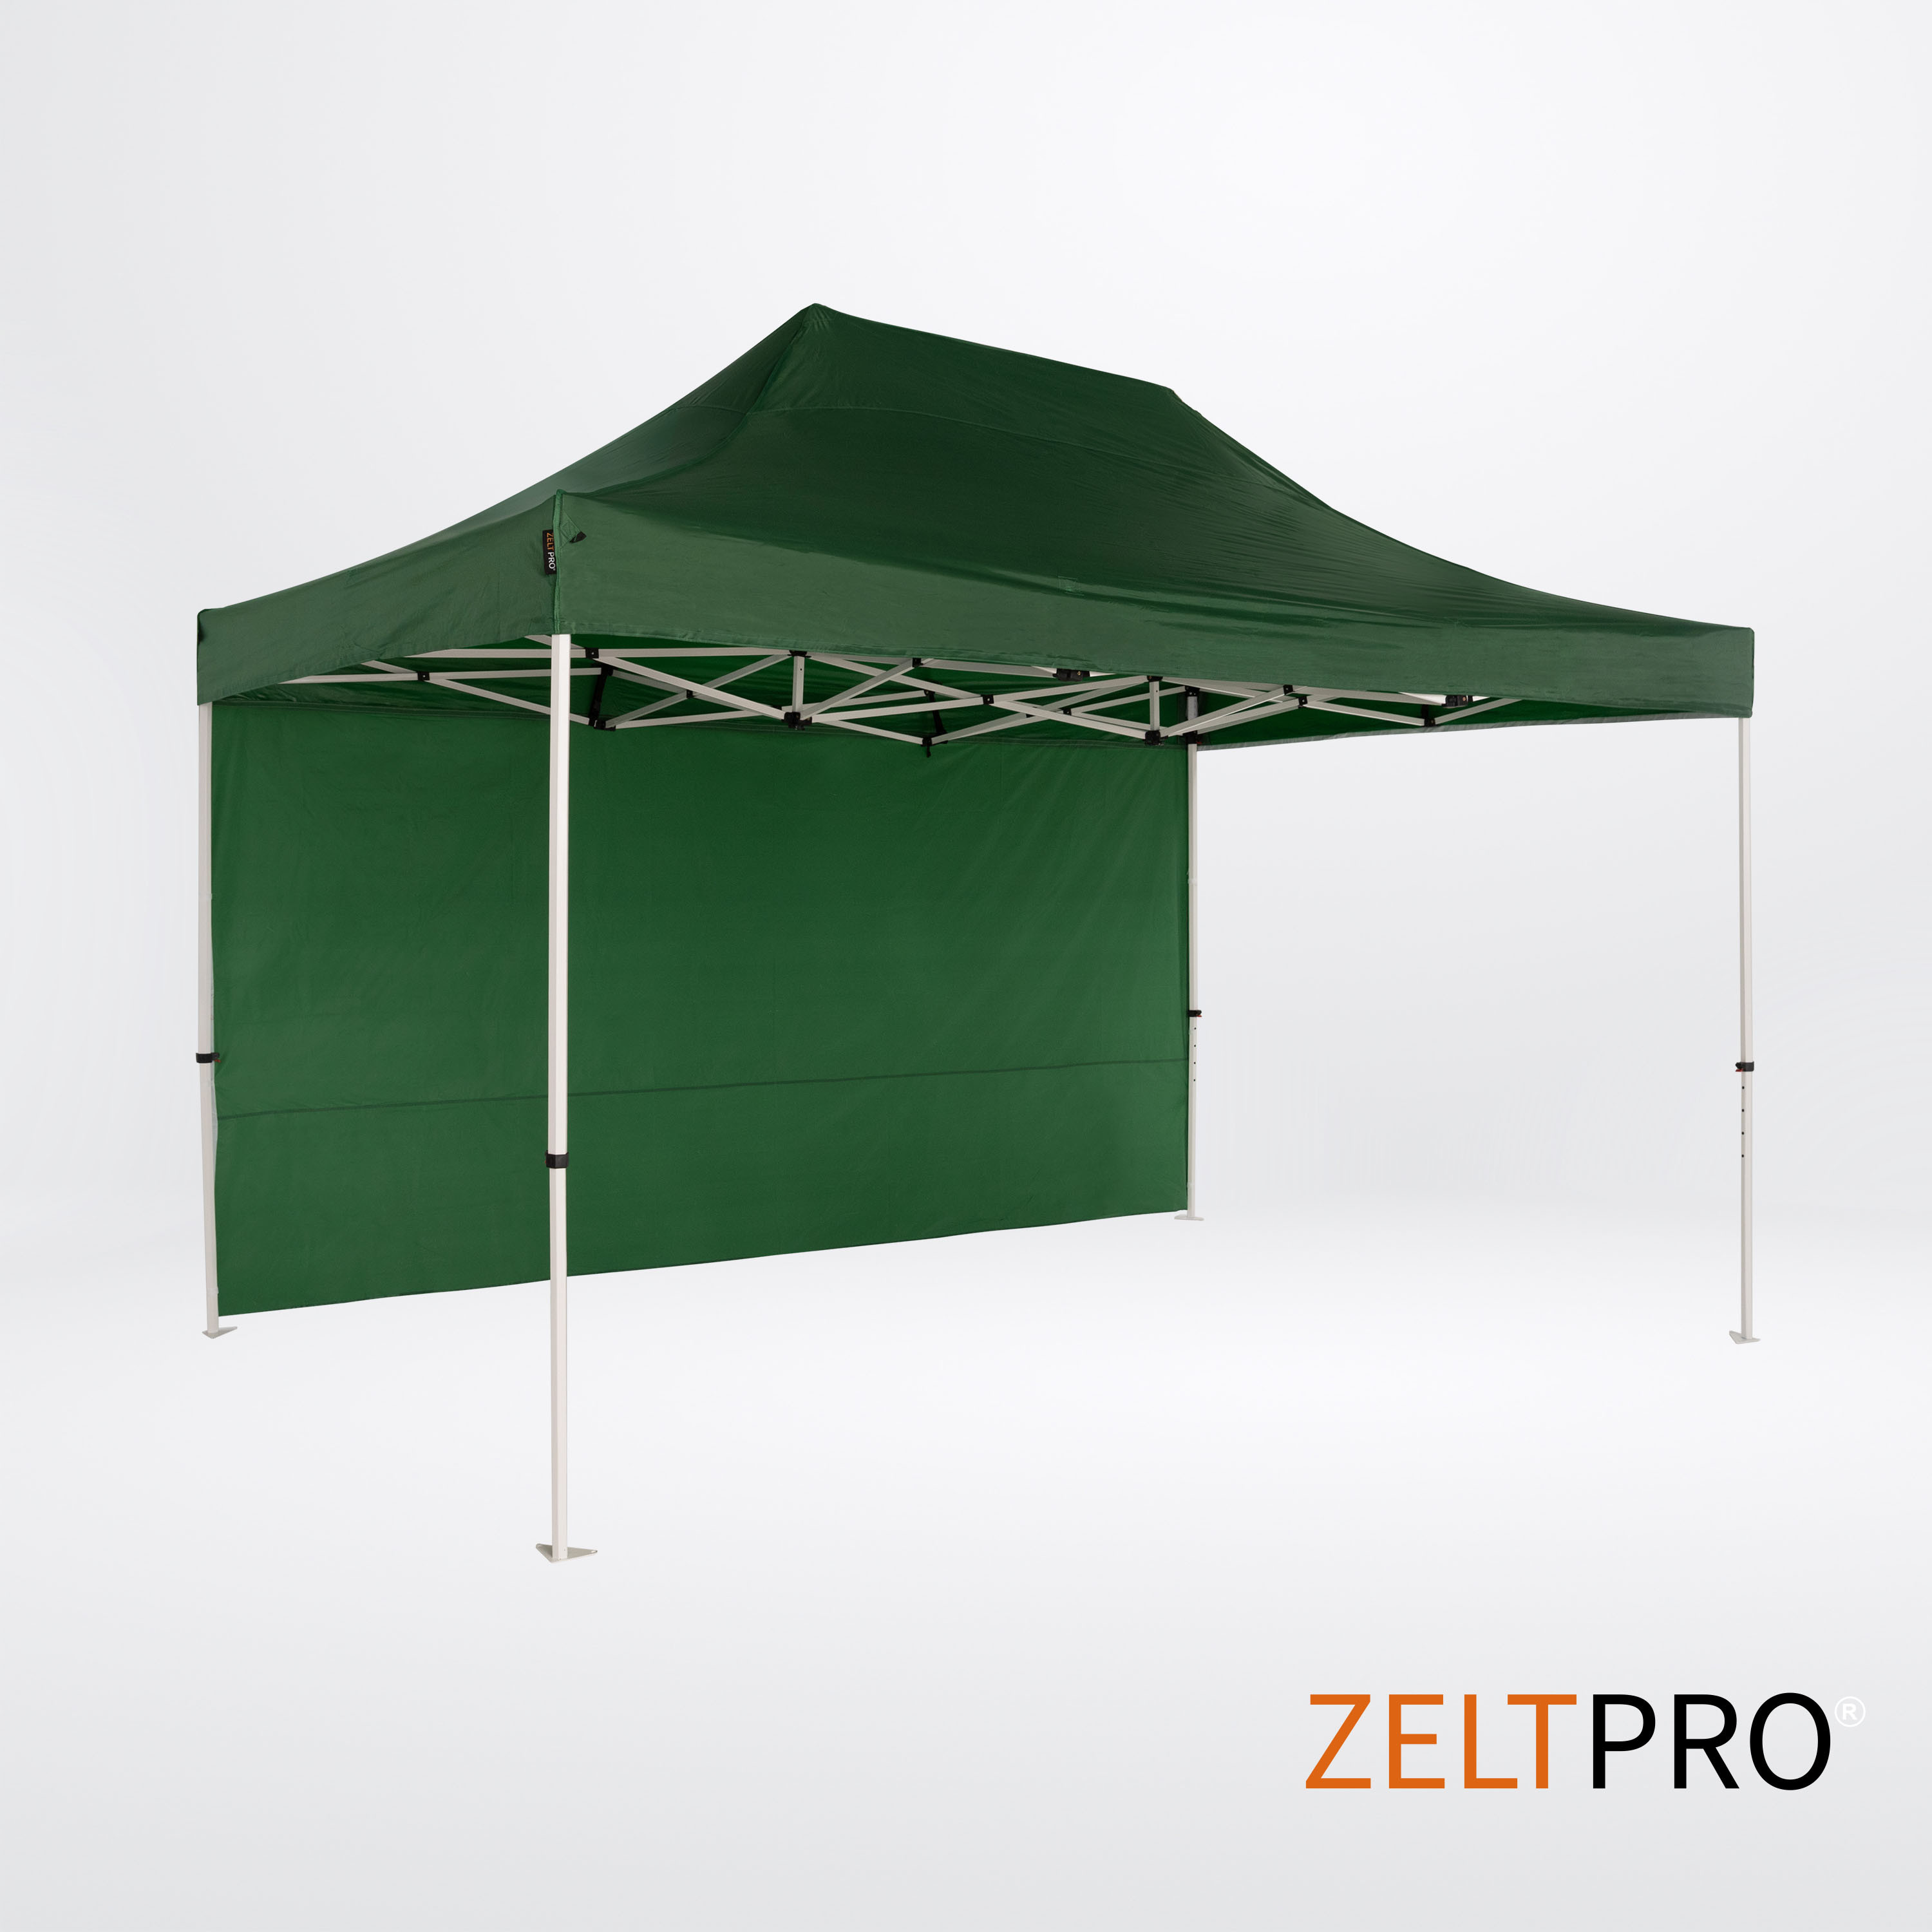 Tirdzniecības telts 3x2 Zaļa Zeltpro PROFRAME